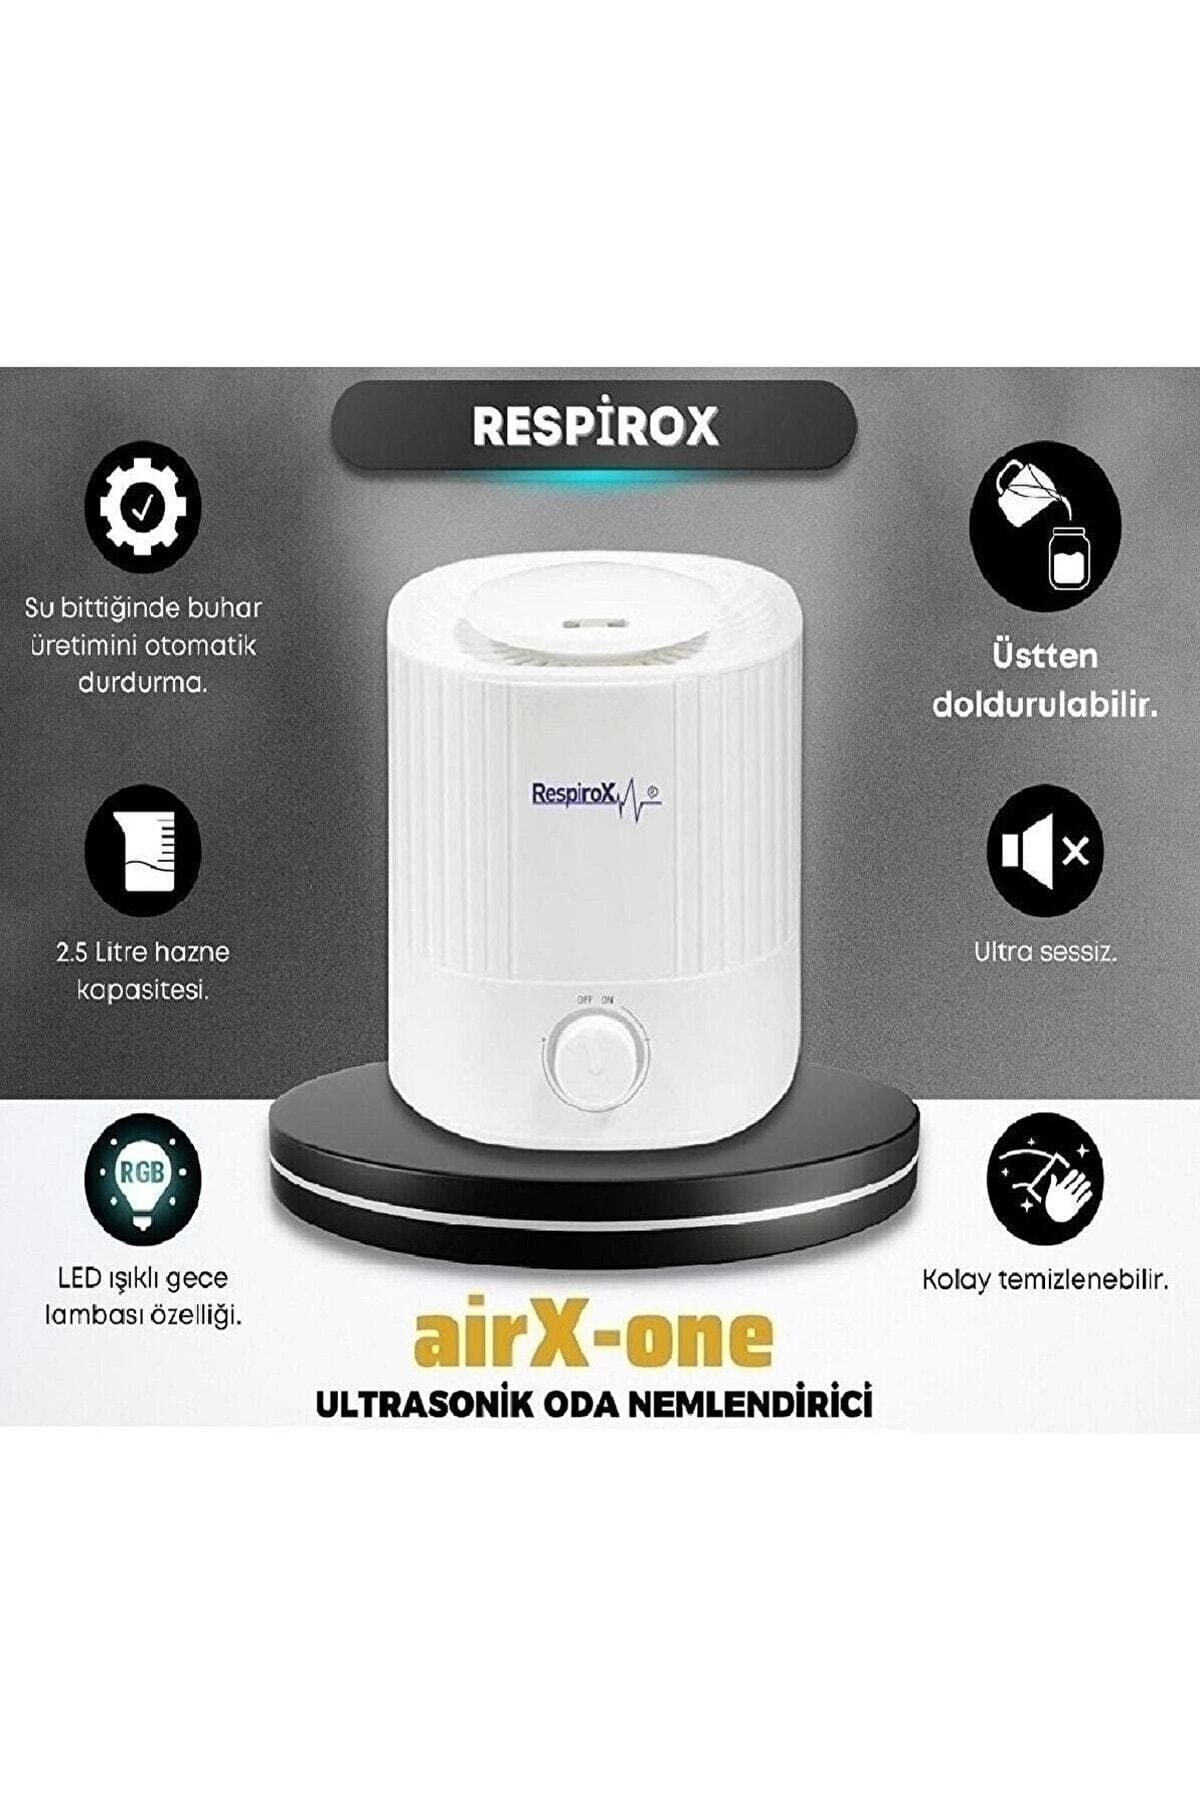 Respirox Aırx-one Oda Nemlendirici 2,5 Litre